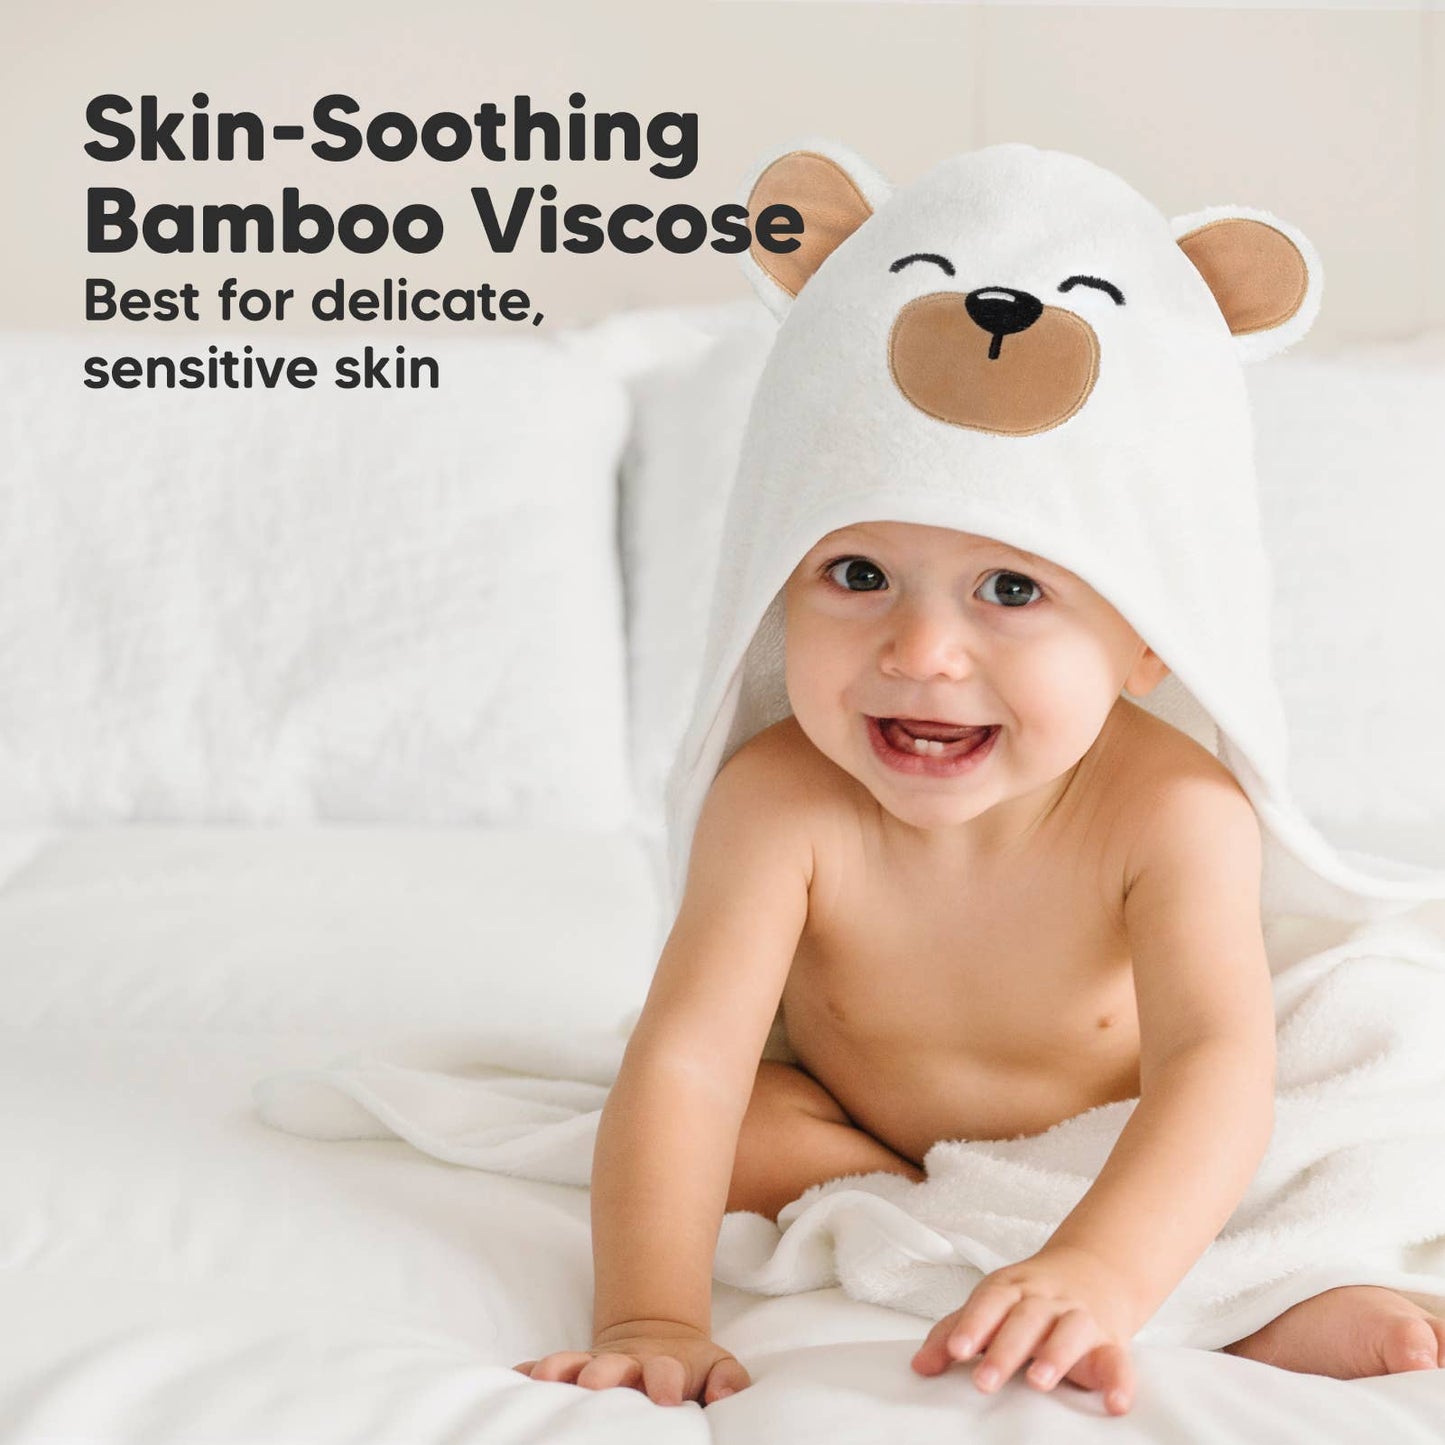 KeaBabies - KeaBabies Cuddle Baby Hooded Towel